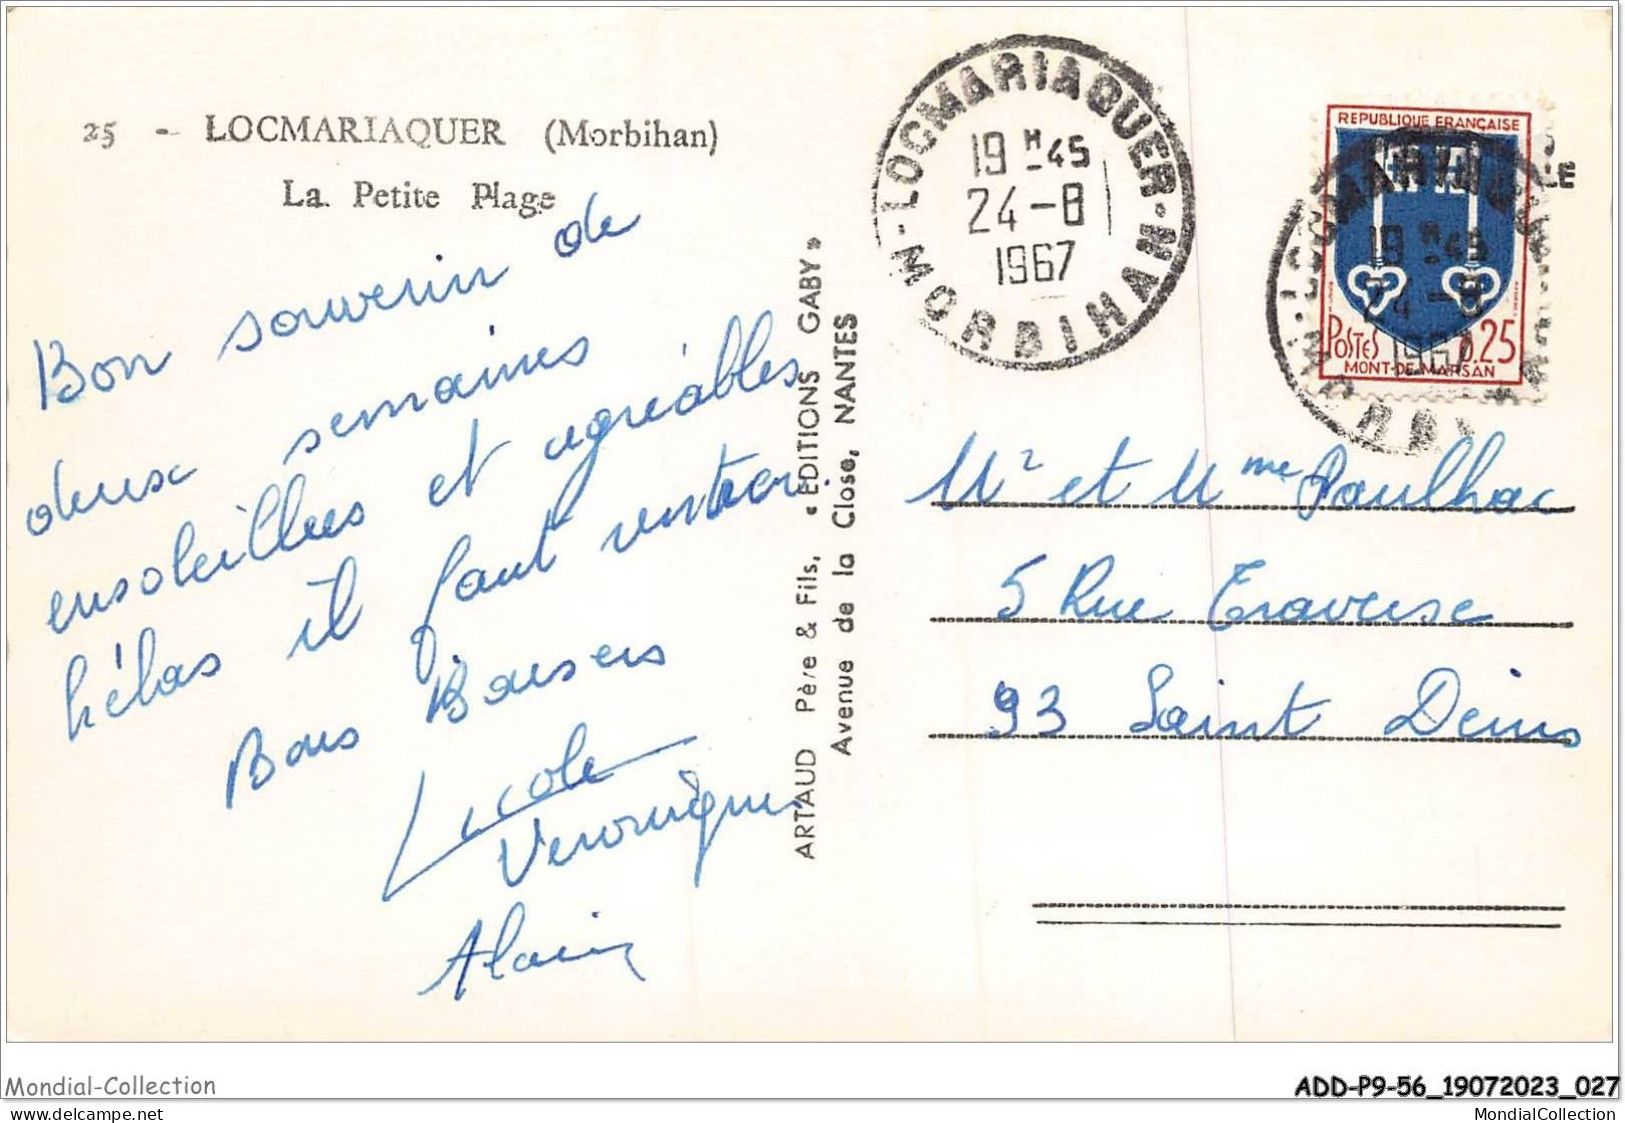 ADDP9-56-0769 - LOCMARIAQUER - La Pétite Plage - Locmariaquer